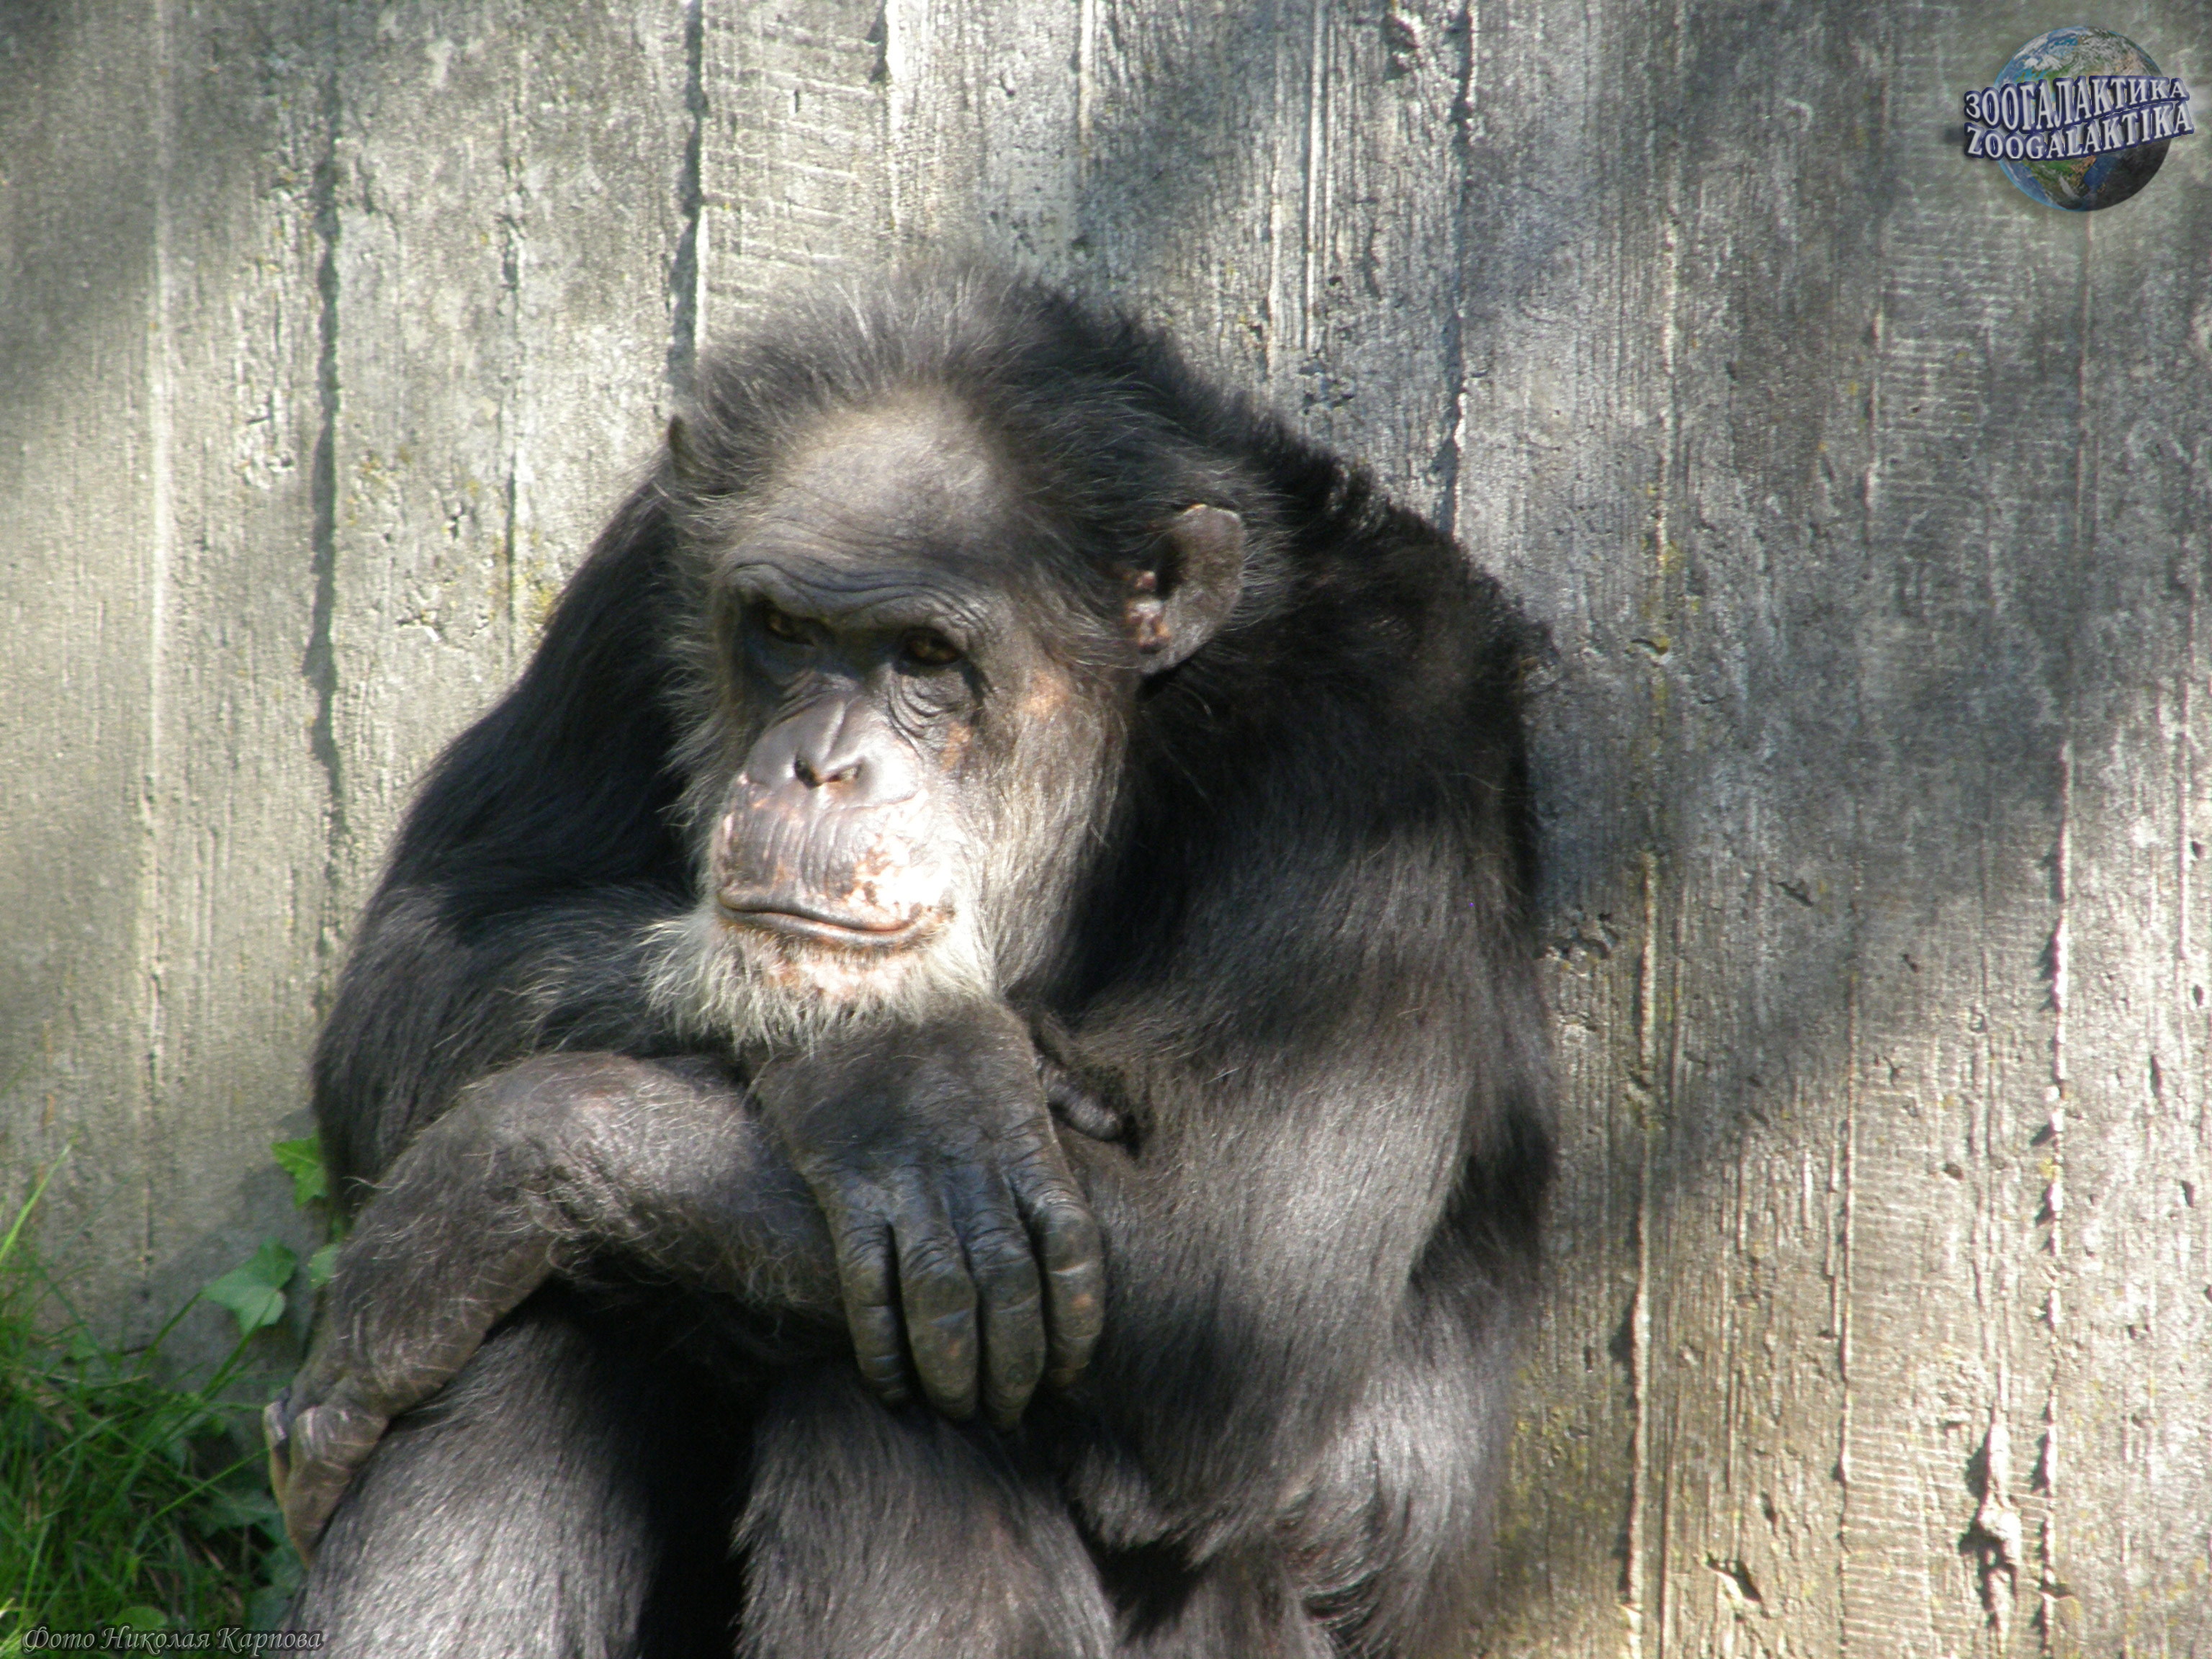 Приматы - Млекопитающие | Некоммерческий учебно-познавательный  интернет-портал Зоогалактика